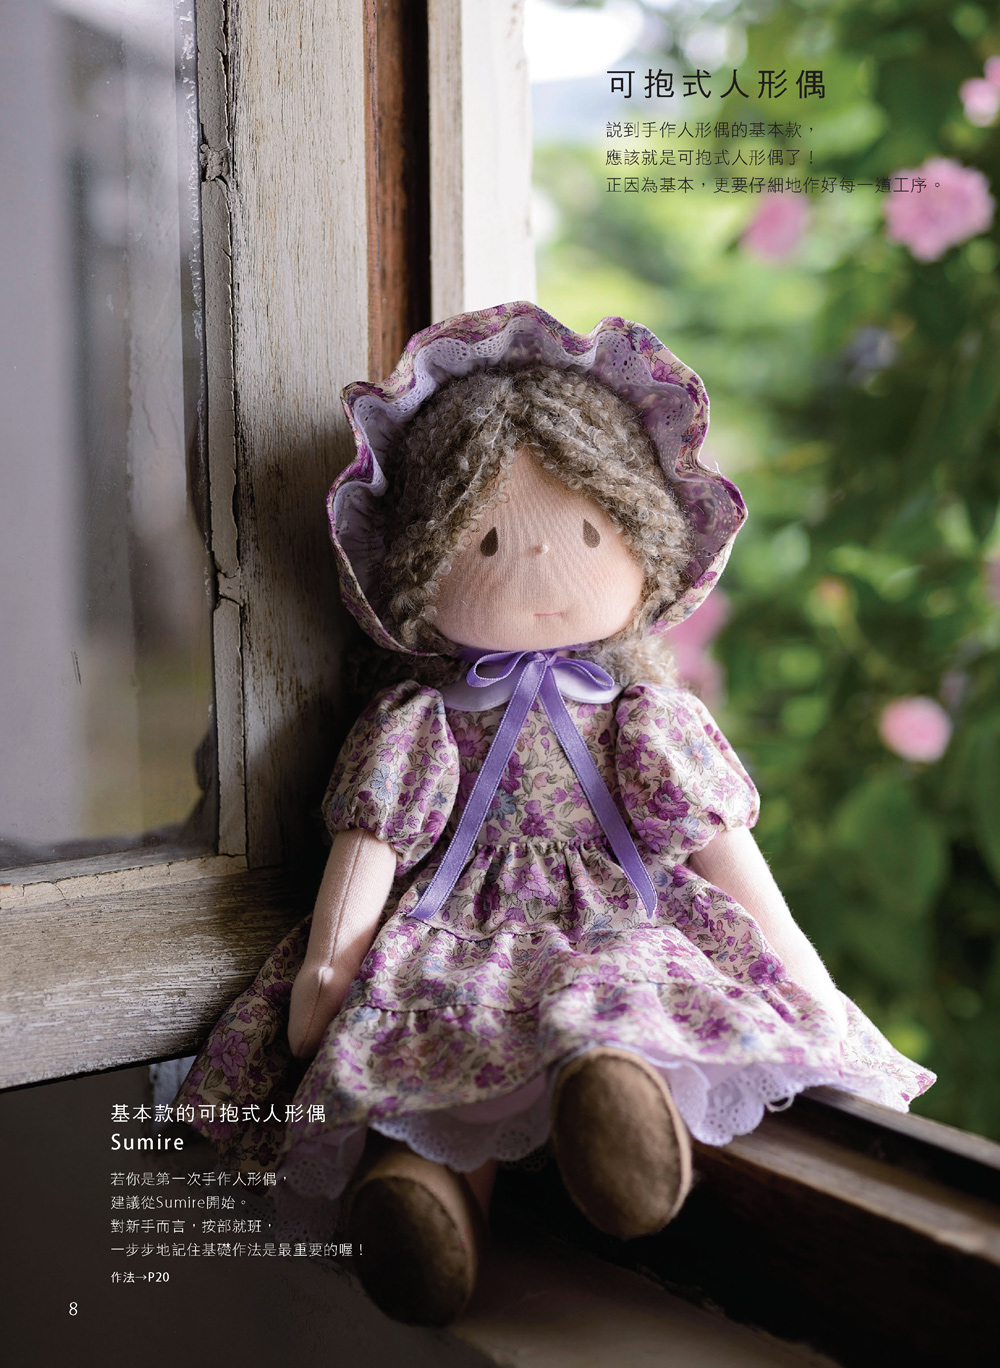 ►生活風格►暢銷書► 米山MARI的手縫可愛人形偶